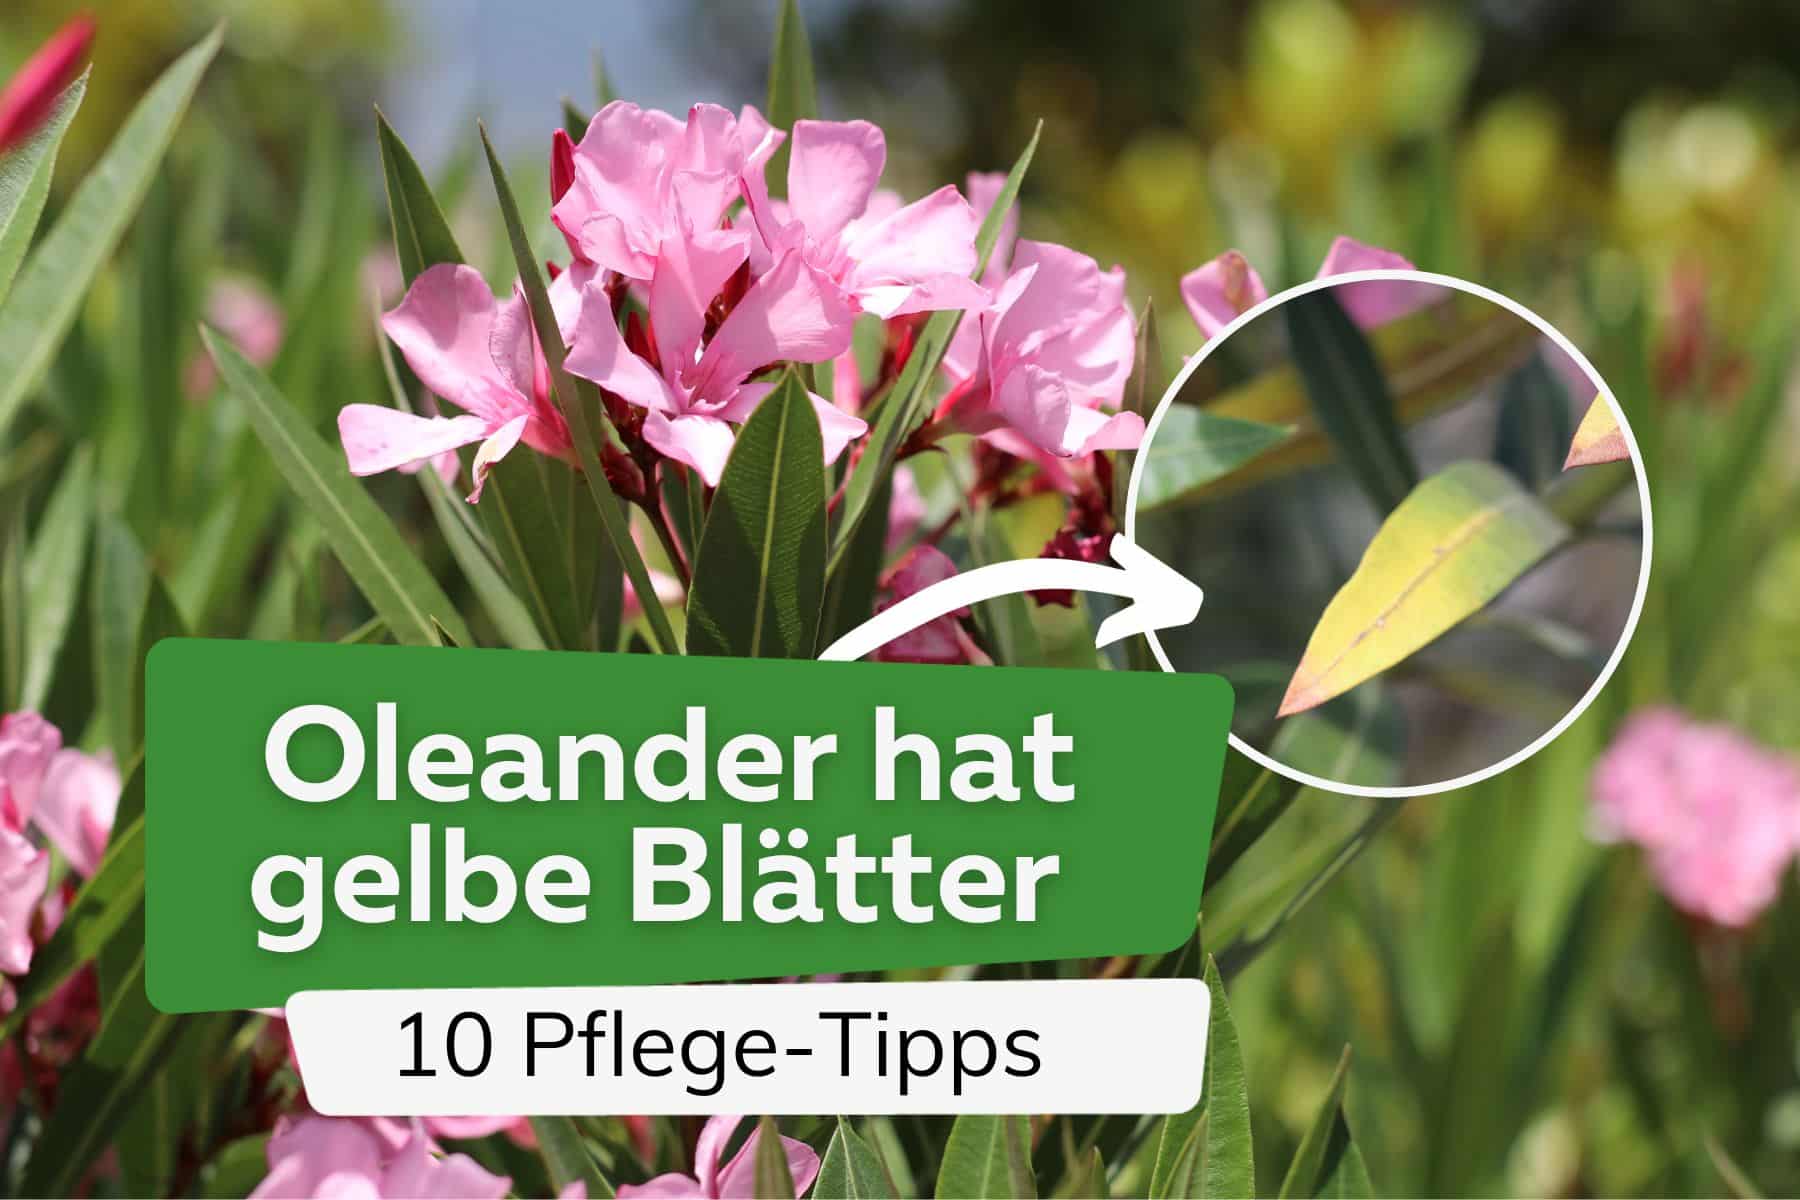 Oleander hat gelbe Blätter - 10 Pflege-Tipps, die Sie jetzt beachten sollten